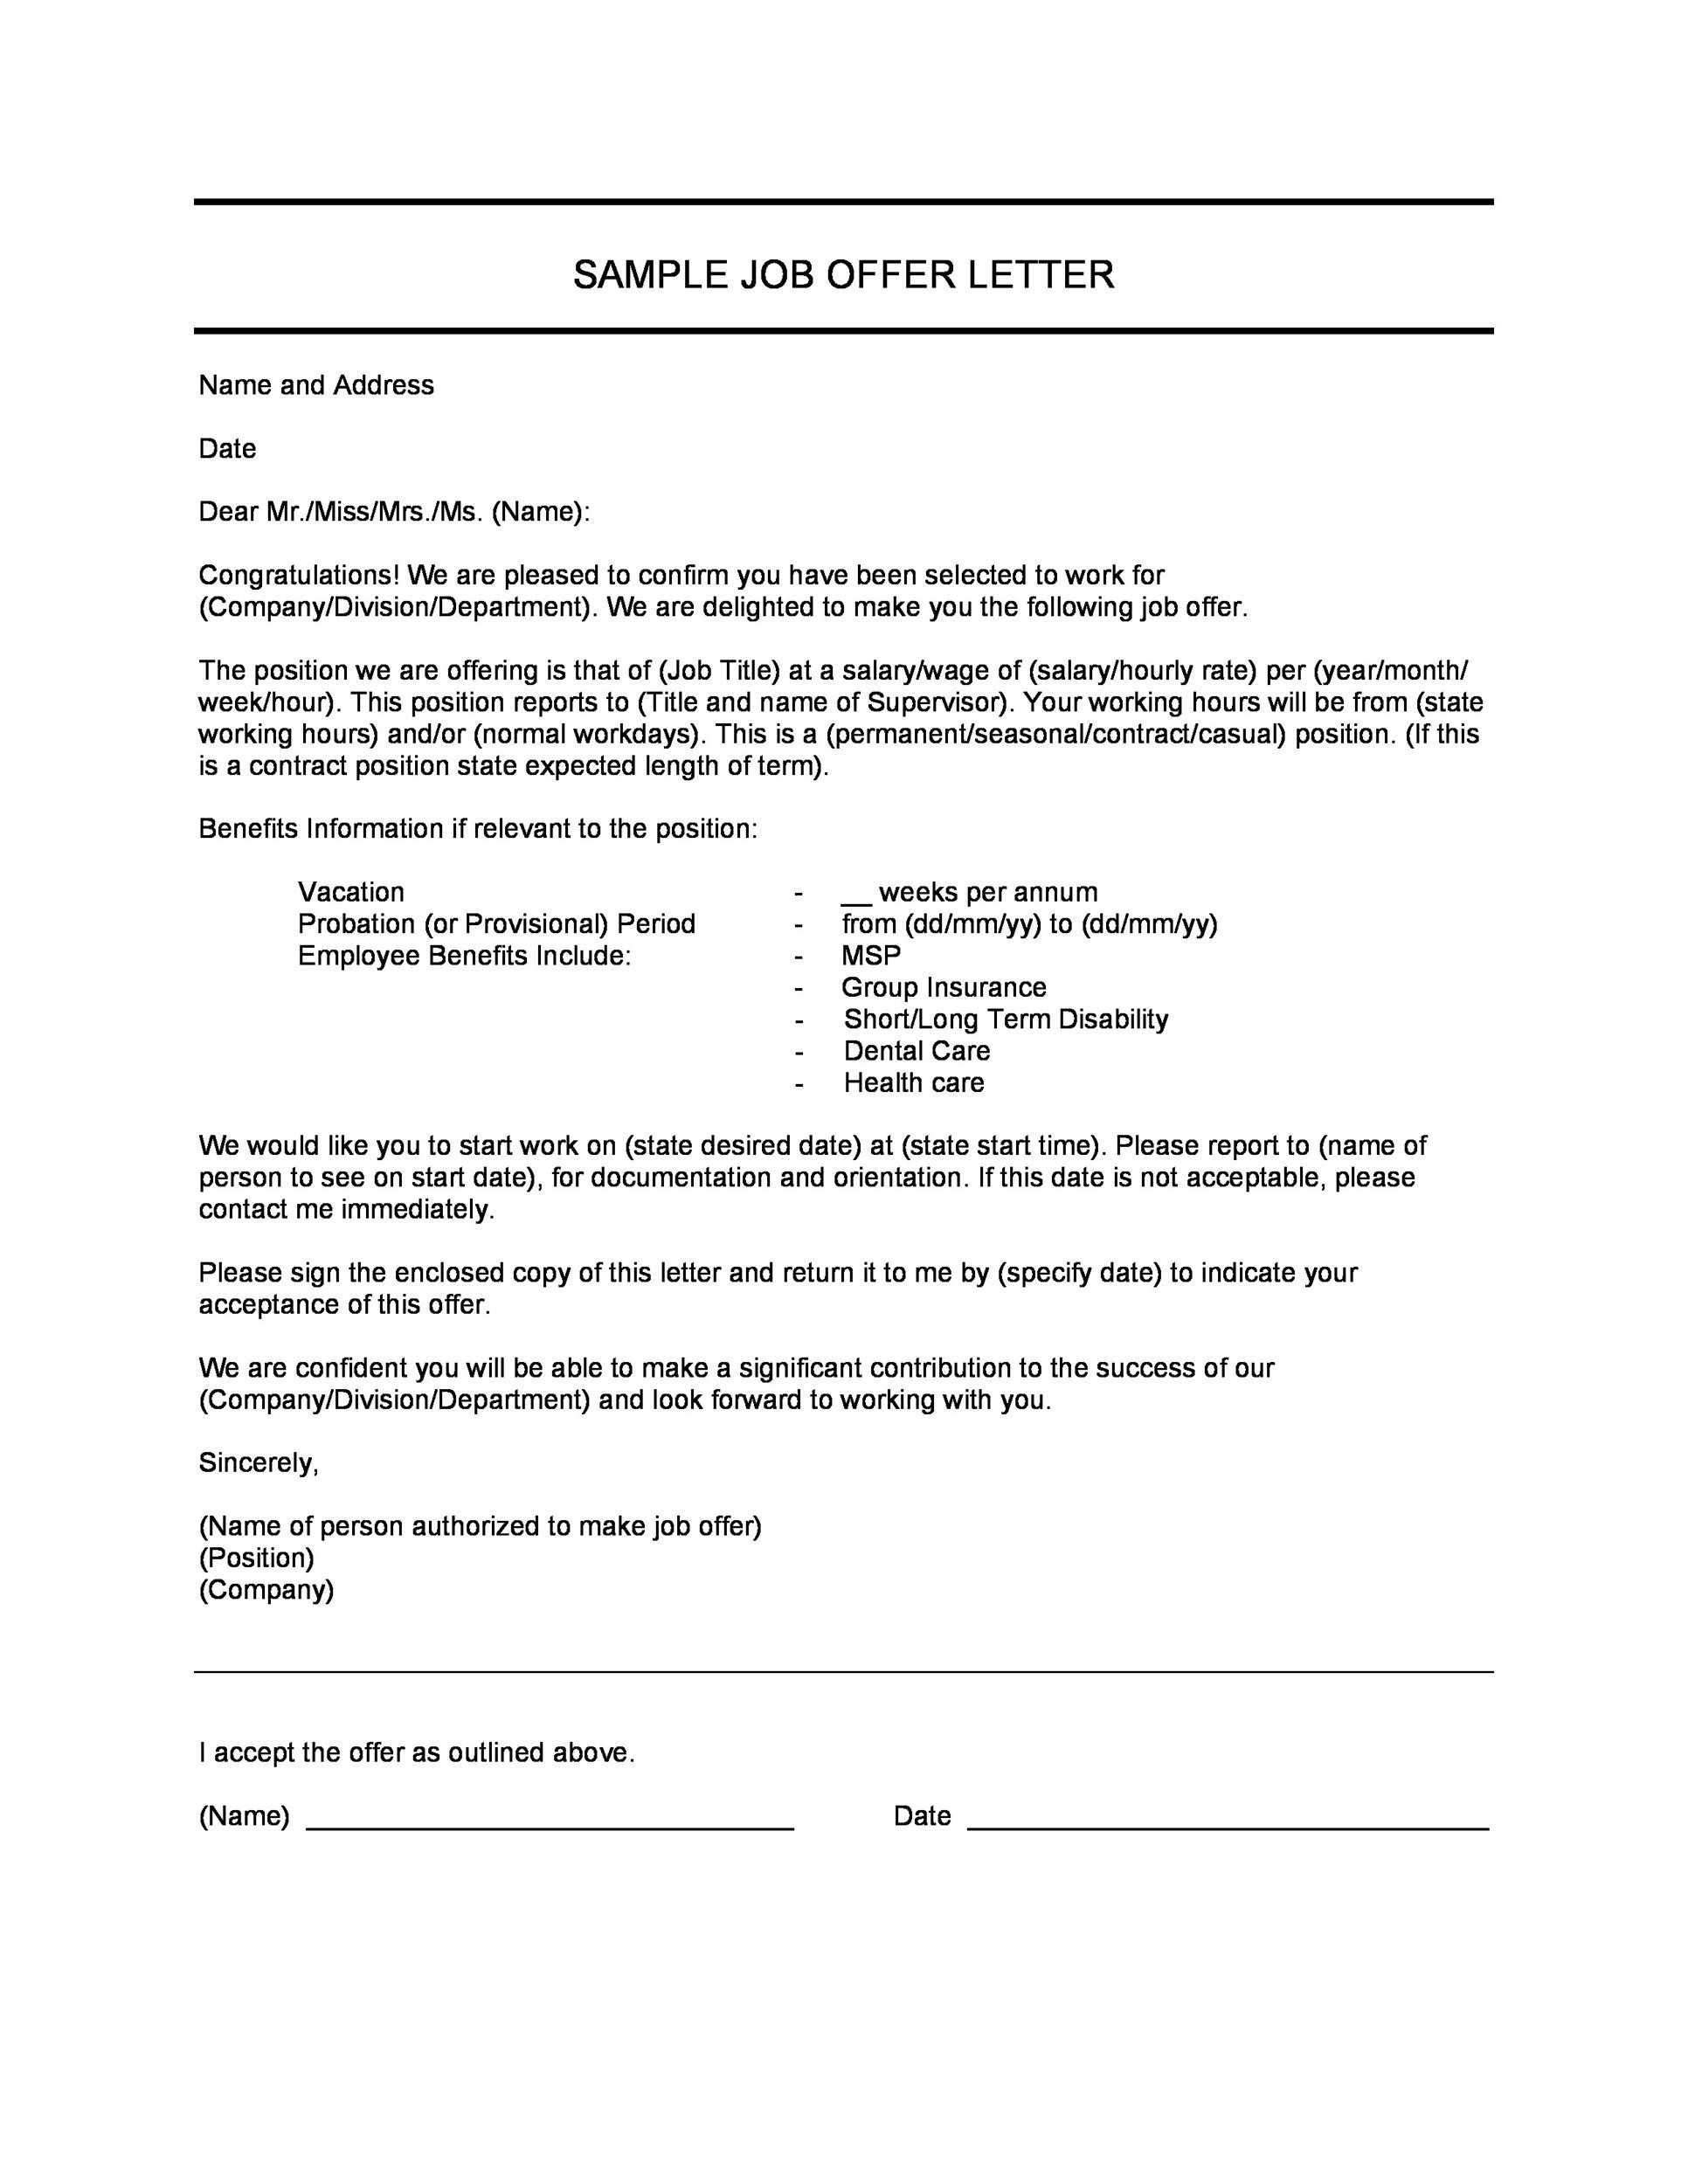 Letter For A Job Offer Grude Interpretomics Co